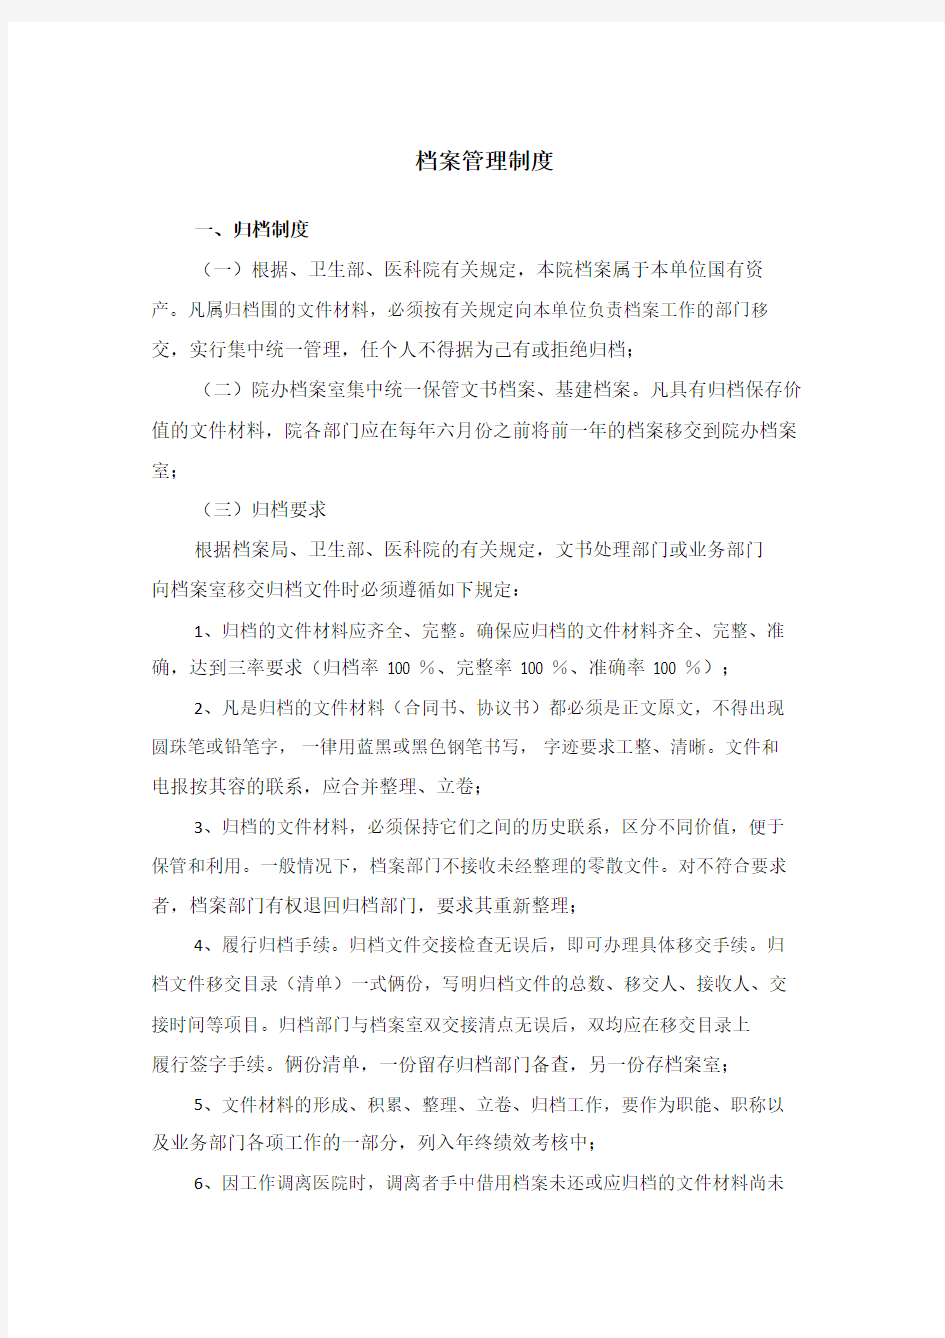 3.北京协和医院档案管理制度